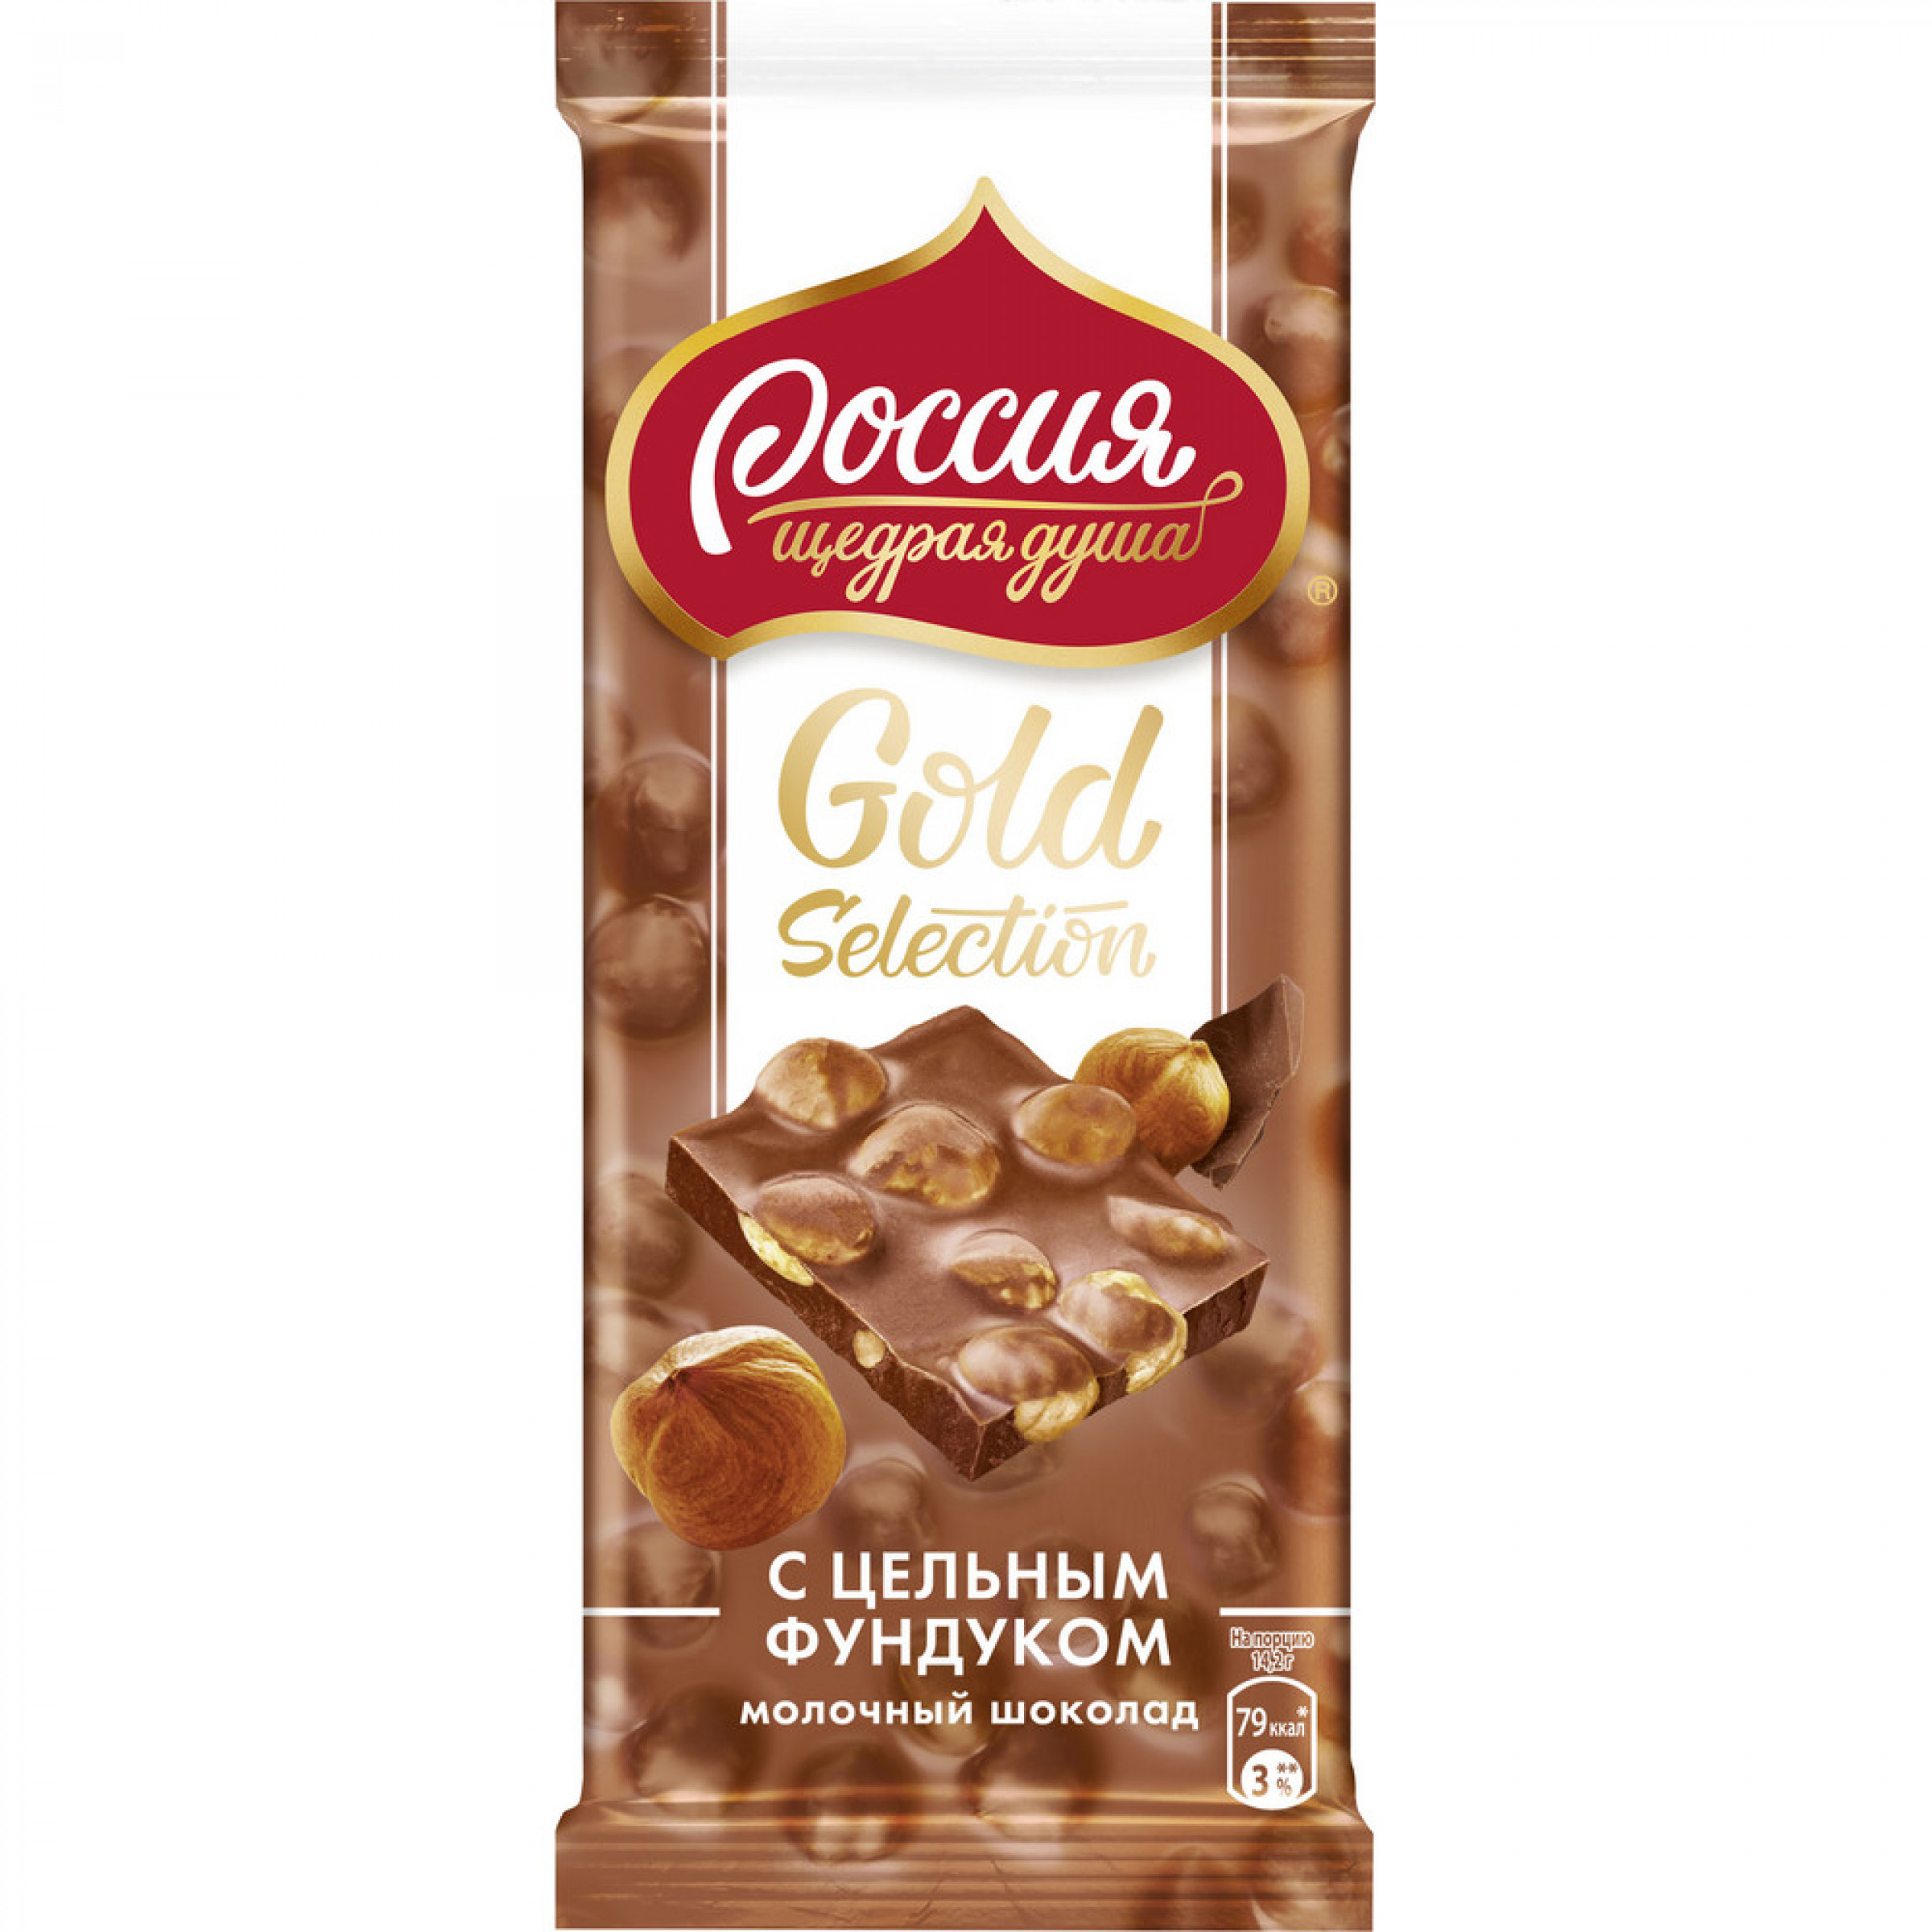 Молочный шоколад Россия - щедрая душа Gold Selection с цельным фундуком 85 г